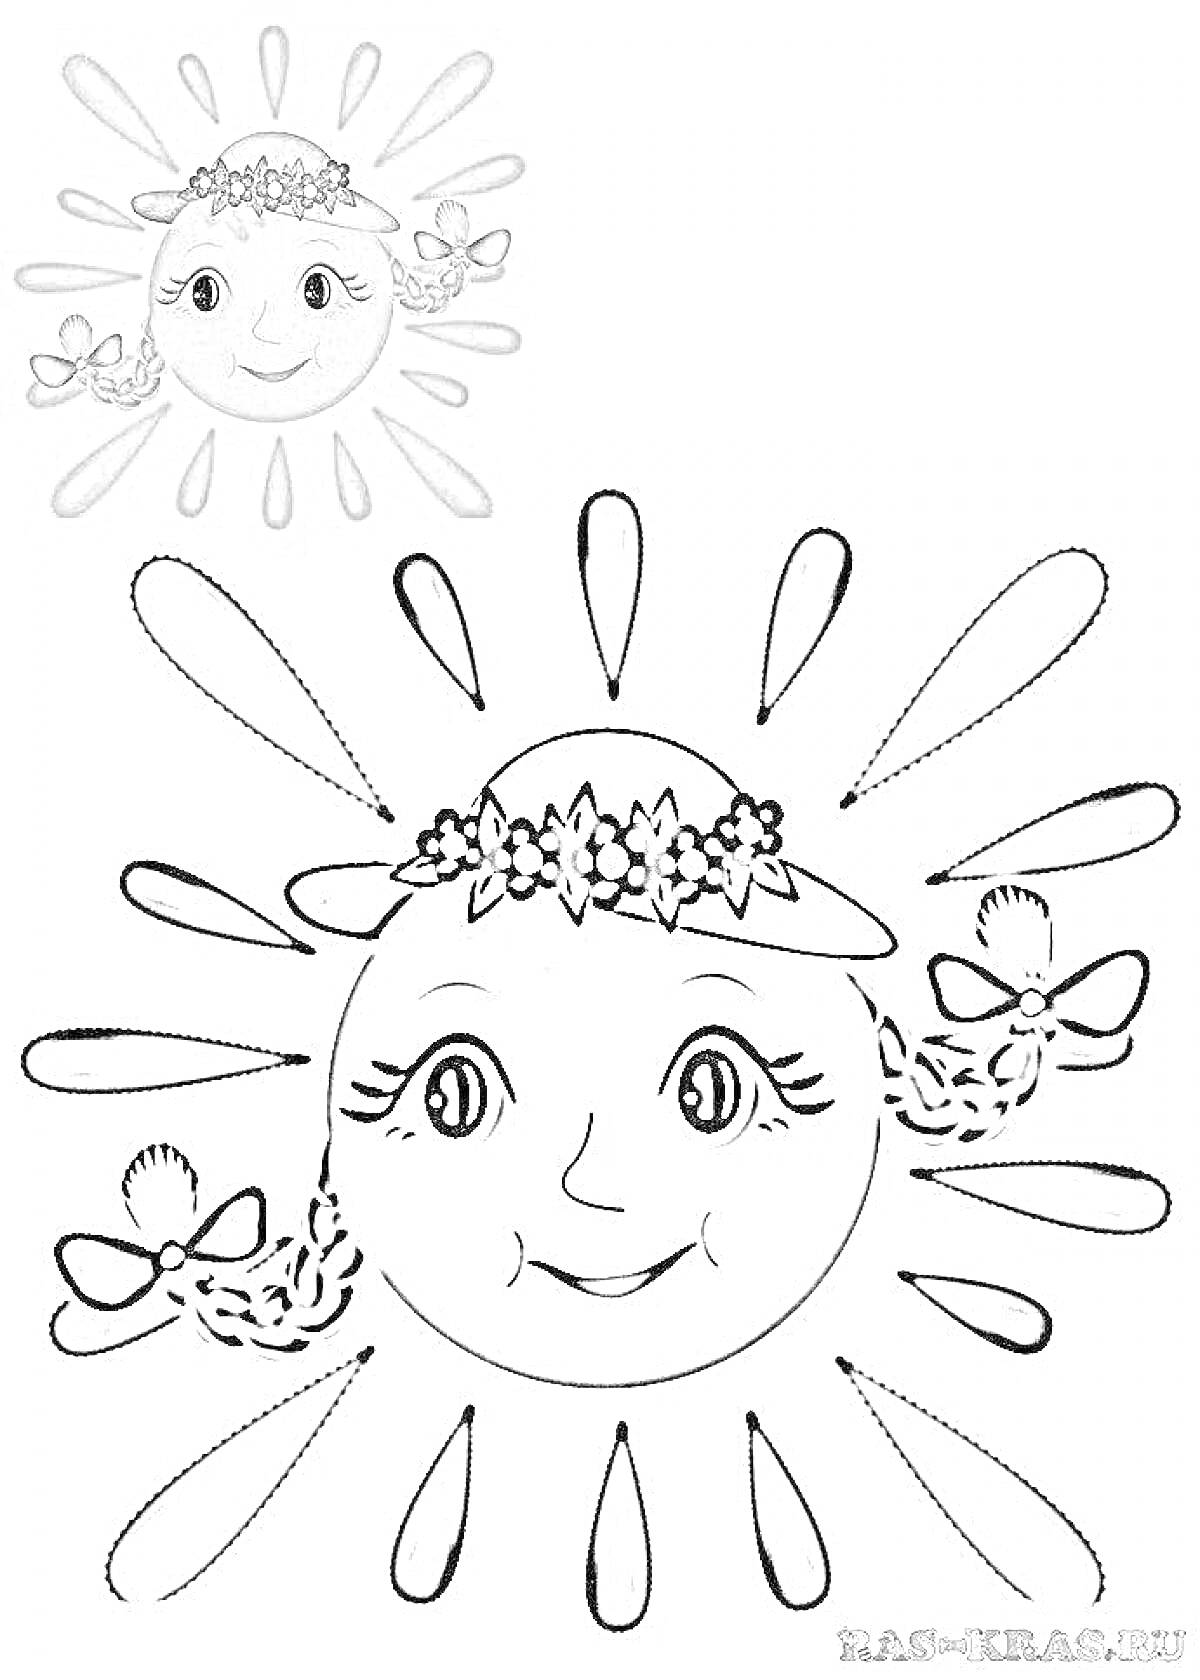 Раскраска Солнышко с венком из цветов и бантиками на щечках